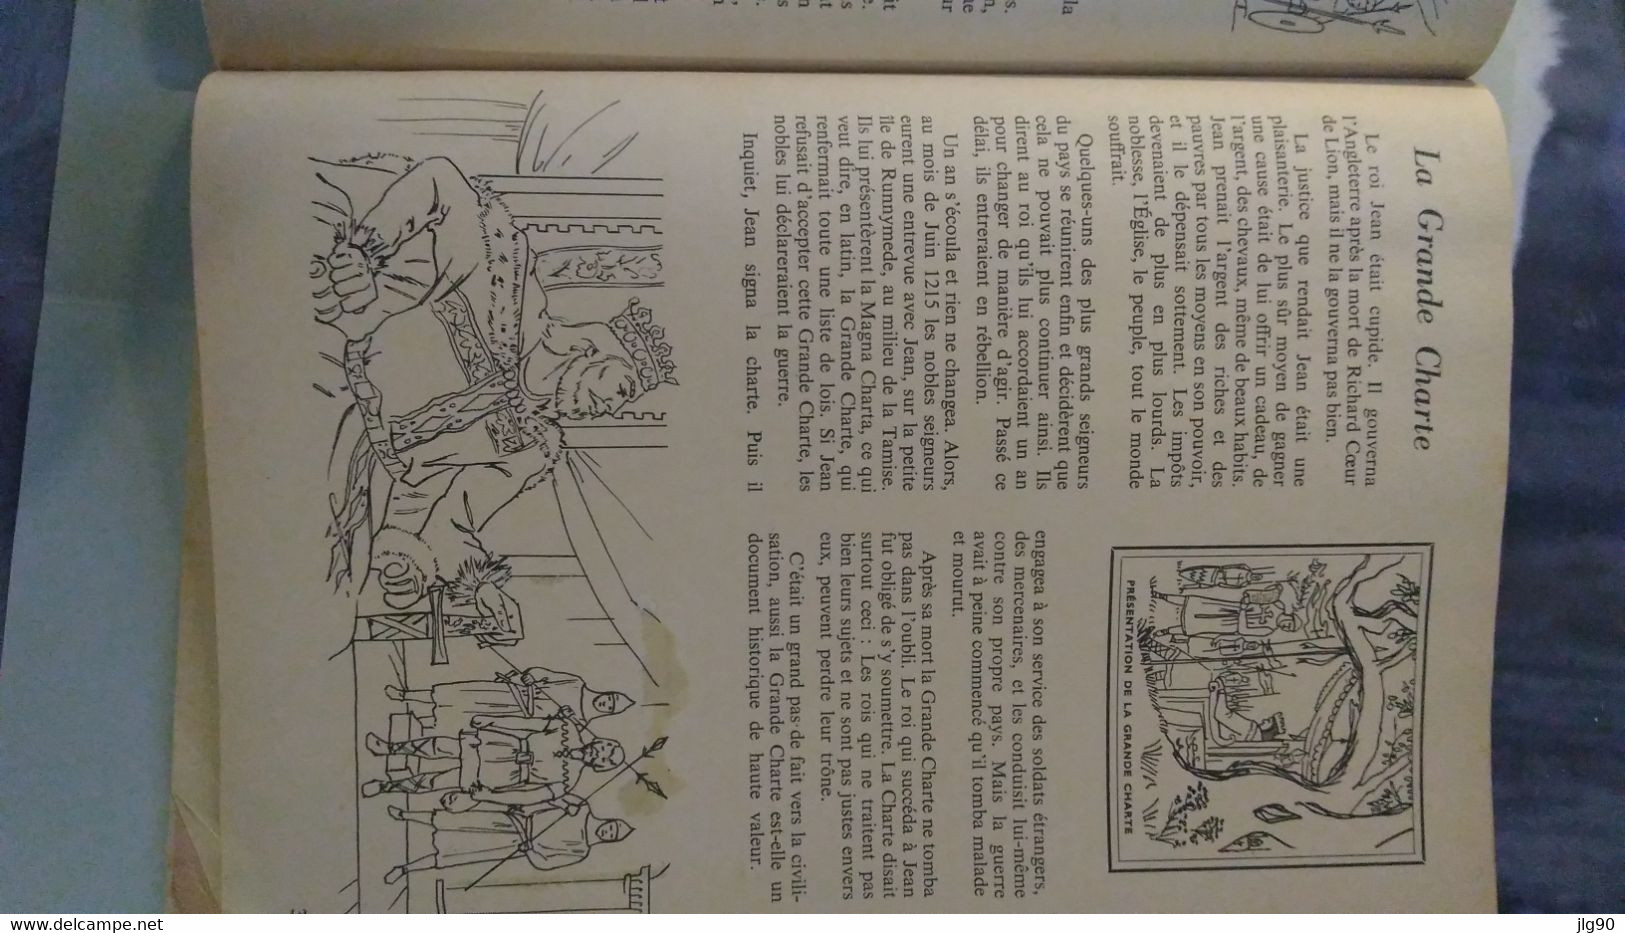 L'encyclopédie par le Timbre, le Moyen-Age, 48p Ed. des deux coqs d'Or 1954-60 , 29 images présentes sur 48